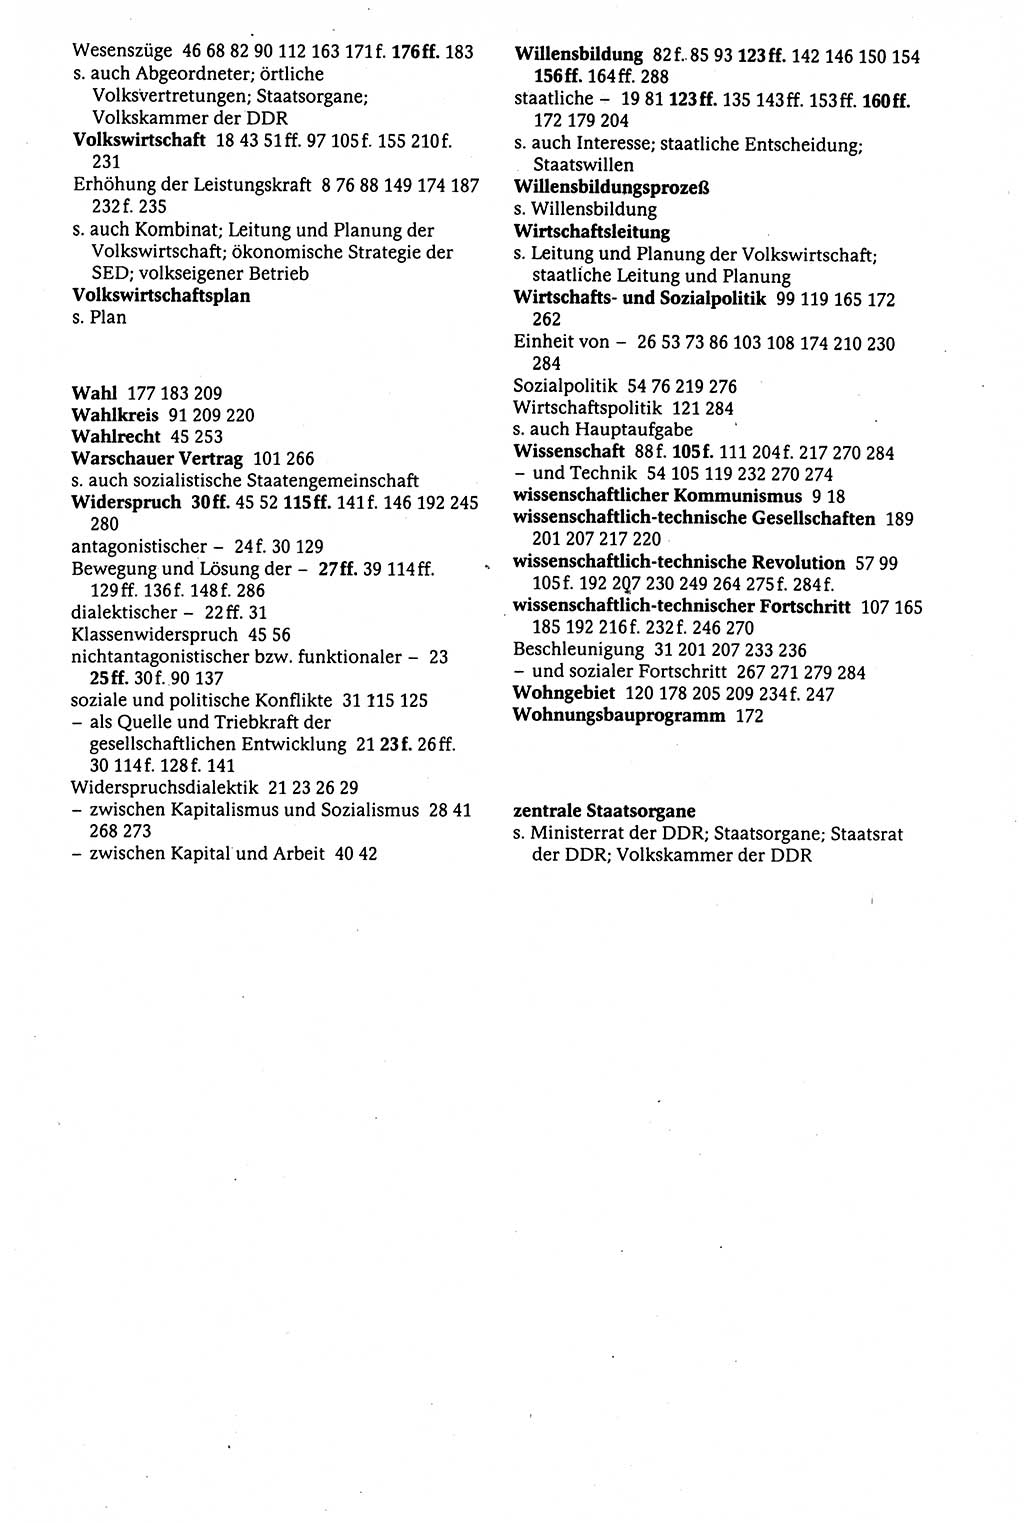 Der Staat im politischen System der DDR (Deutsche Demokratische Republik) 1986, Seite 319 (St. pol. Sys. DDR 1986, S. 319)